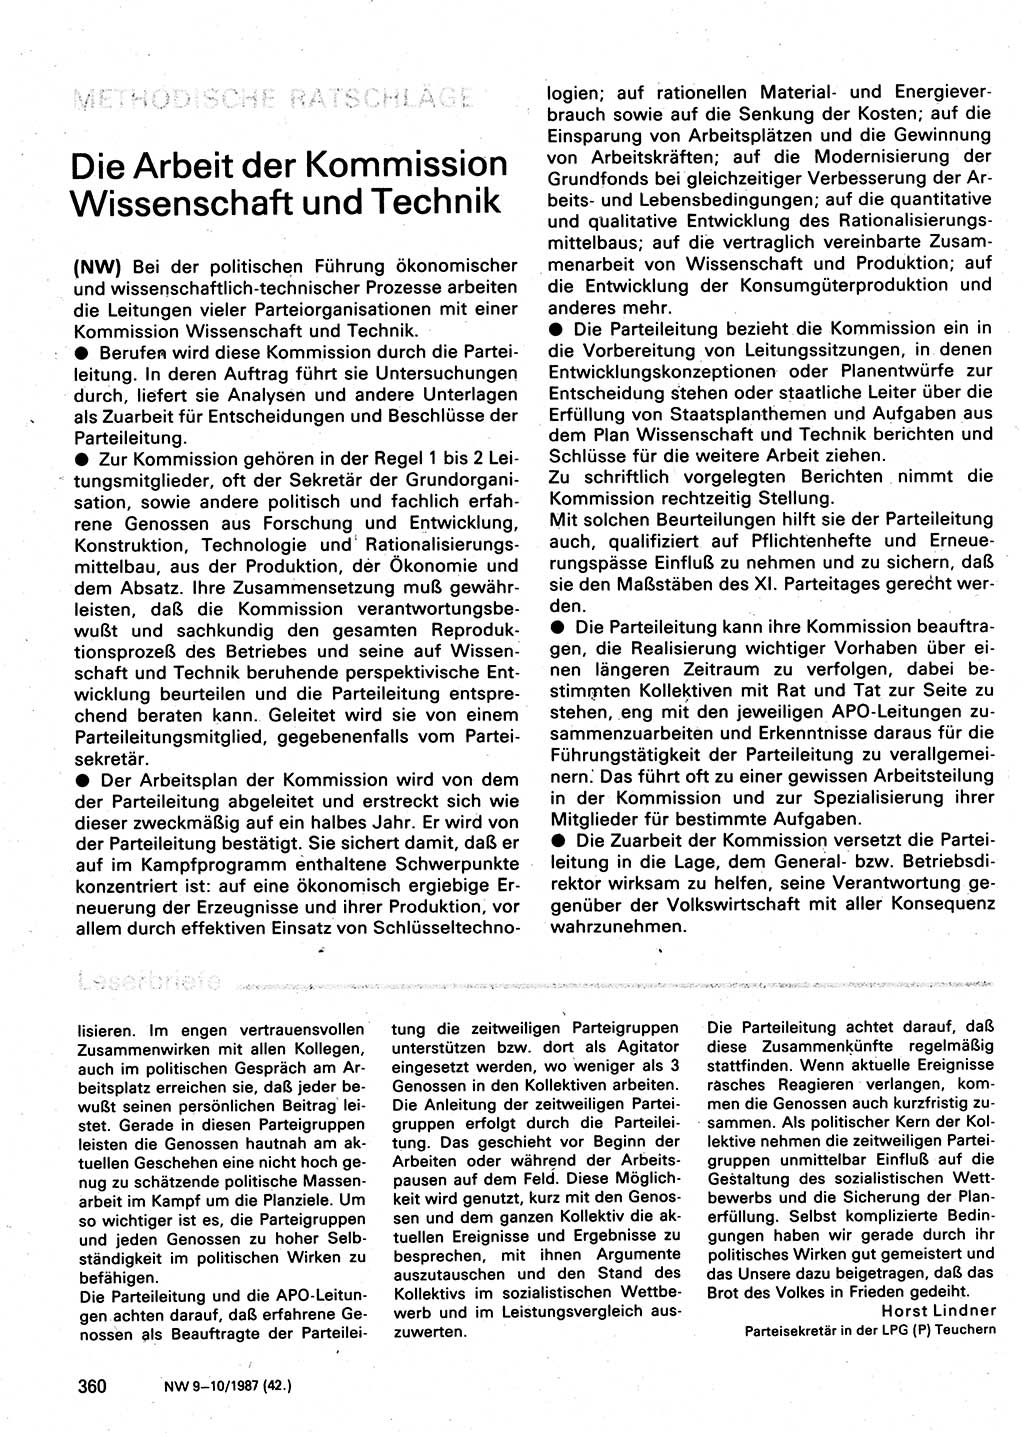 Neuer Weg (NW), Organ des Zentralkomitees (ZK) der SED (Sozialistische Einheitspartei Deutschlands) für Fragen des Parteilebens, 42. Jahrgang [Deutsche Demokratische Republik (DDR)] 1987, Seite 360 (NW ZK SED DDR 1987, S. 360)